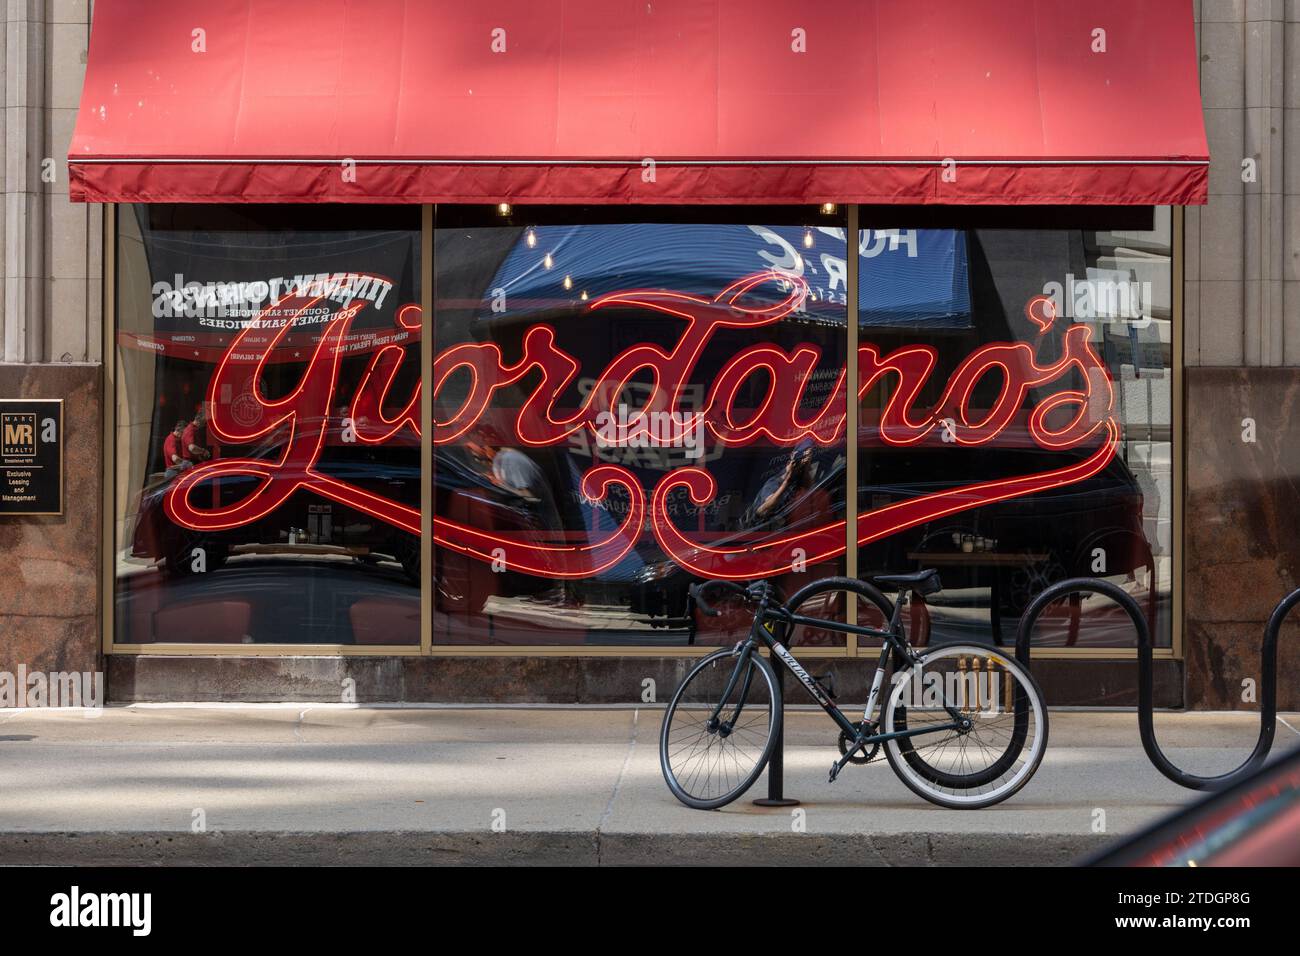 Giordano's est une chaîne de pizzeria américaine spécialisée dans la pizza en croûte farcie de style Chicago, W Jackson Blvd, Chicago, États-Unis le 16 juin 2023 Banque D'Images